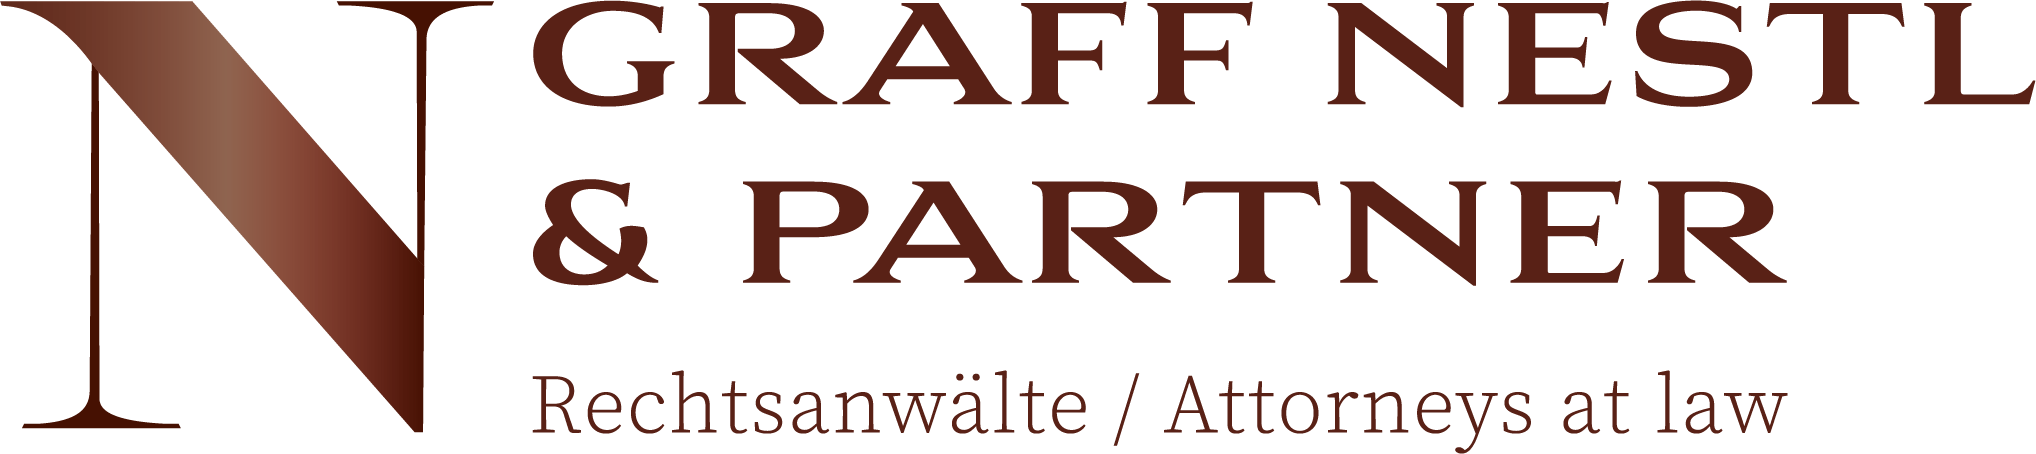 Graff Nestl & Partner | Rechtsanwälte